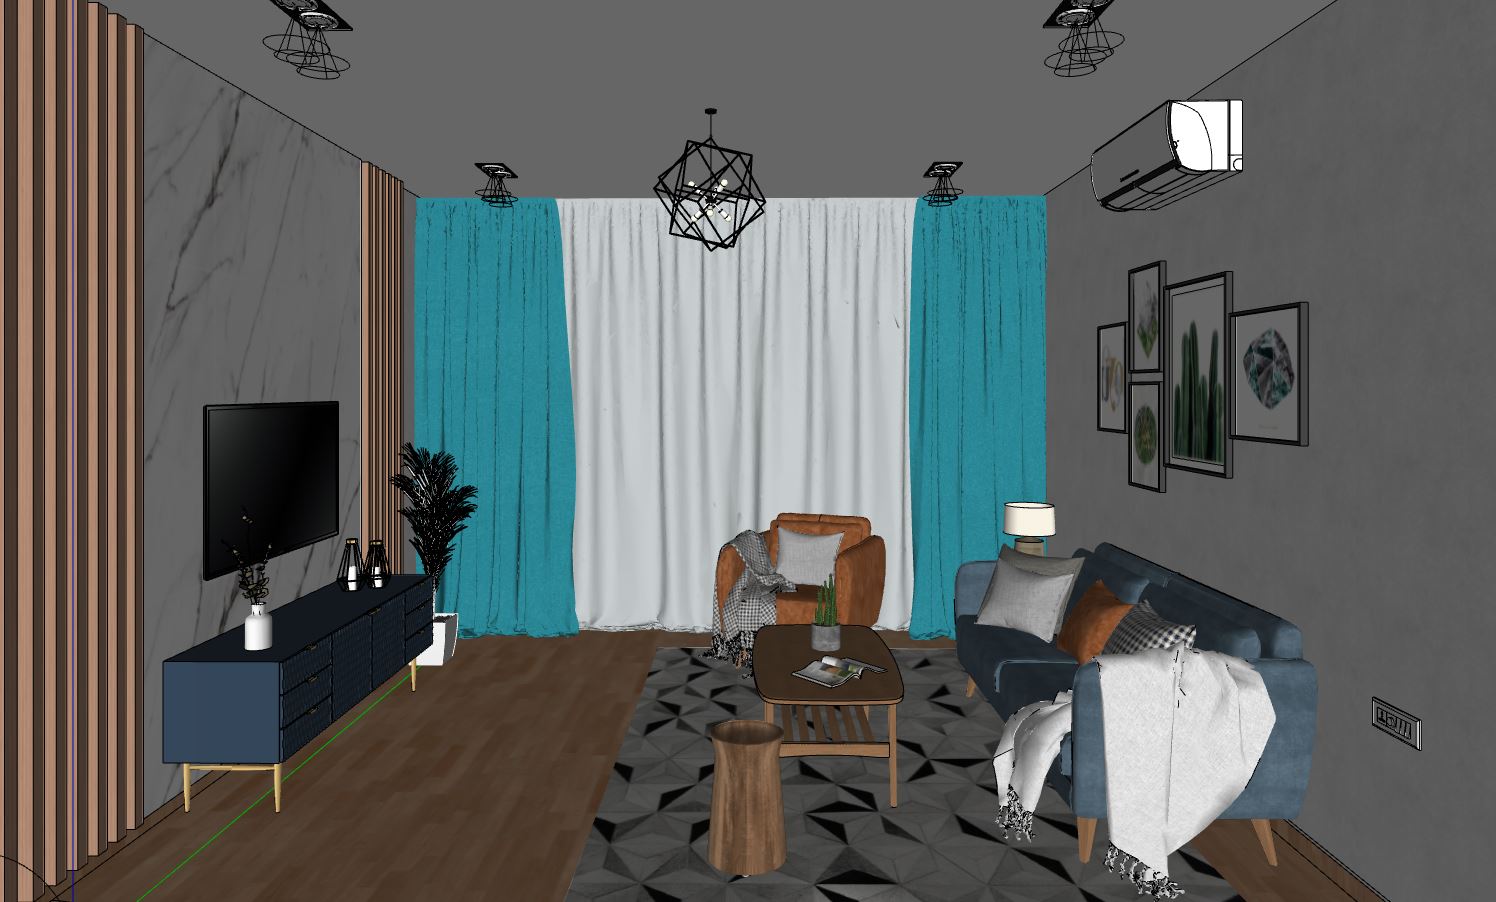 sketchup phòng khách chung cư,phòng khách hiện đại,model 3d phòng khách,thiết kế phòng khách hiện đại